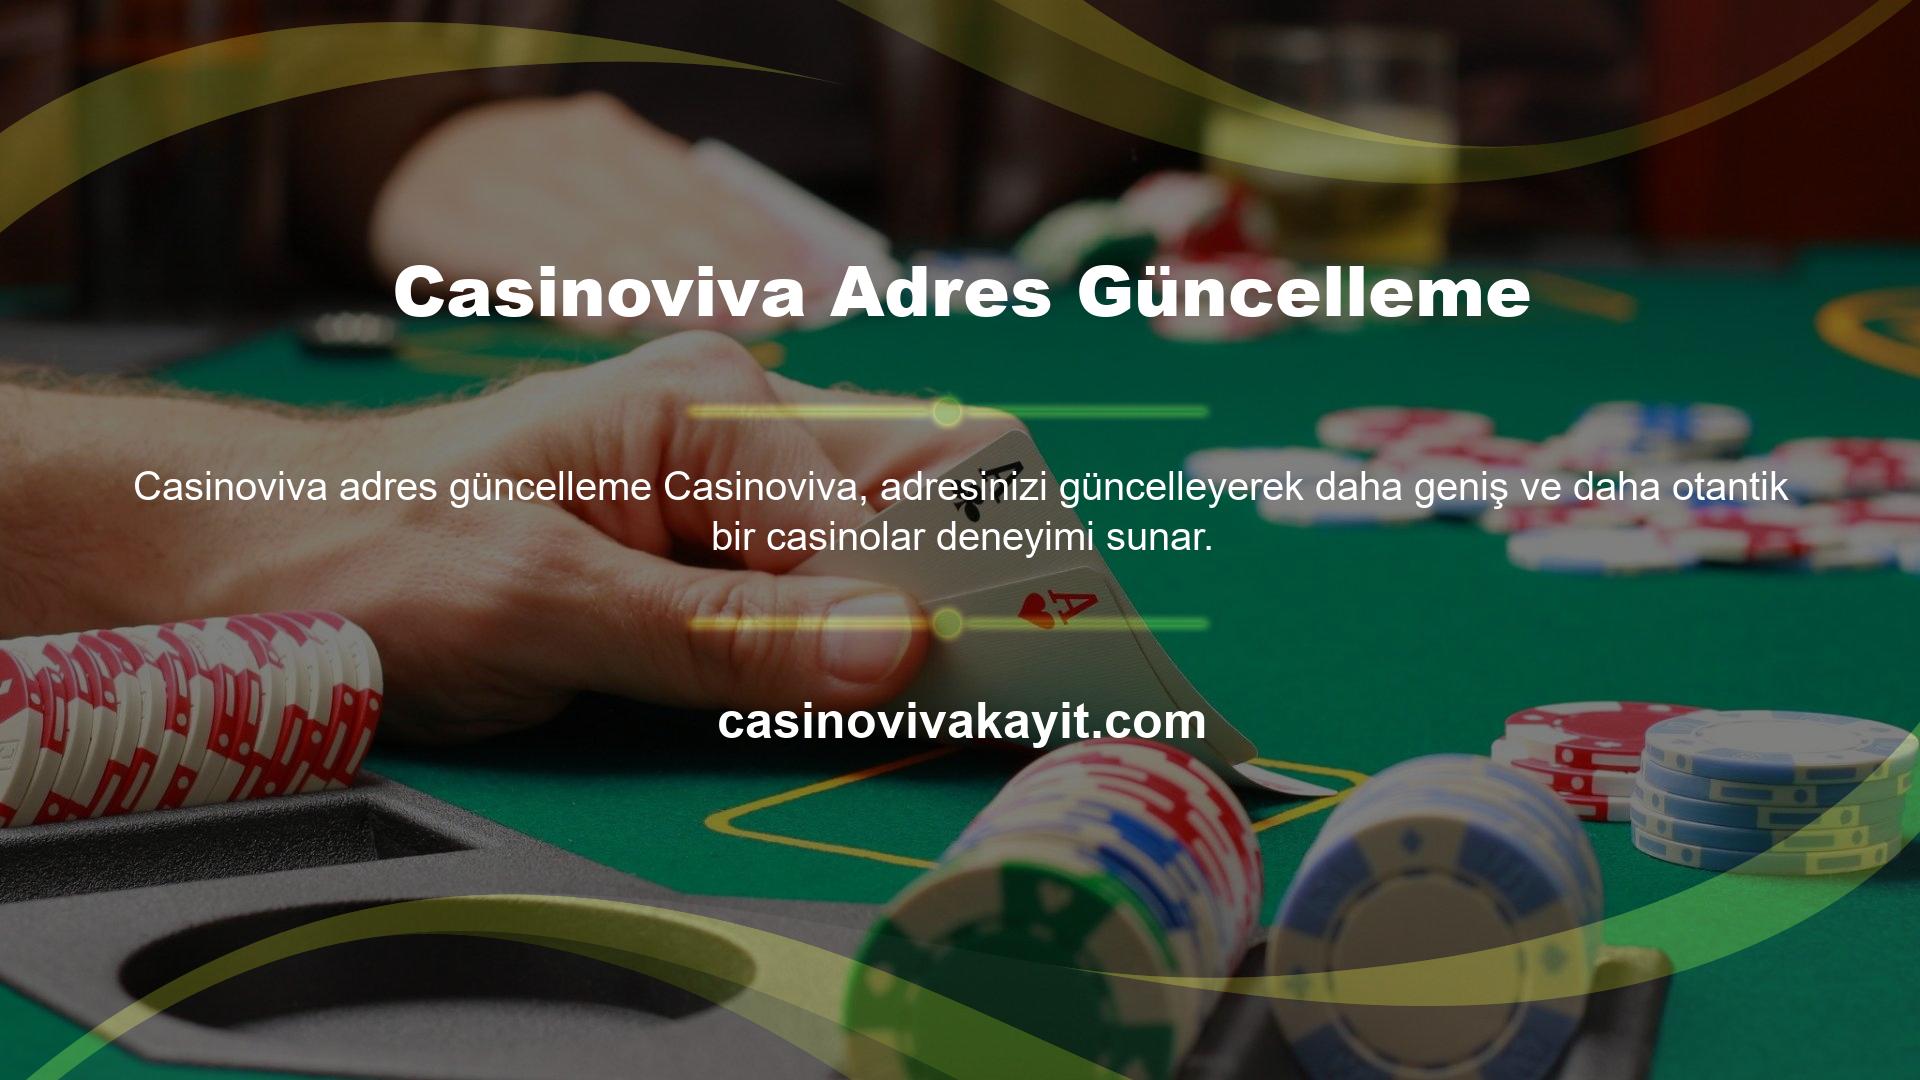 Casinoviva Adres Güncelleme